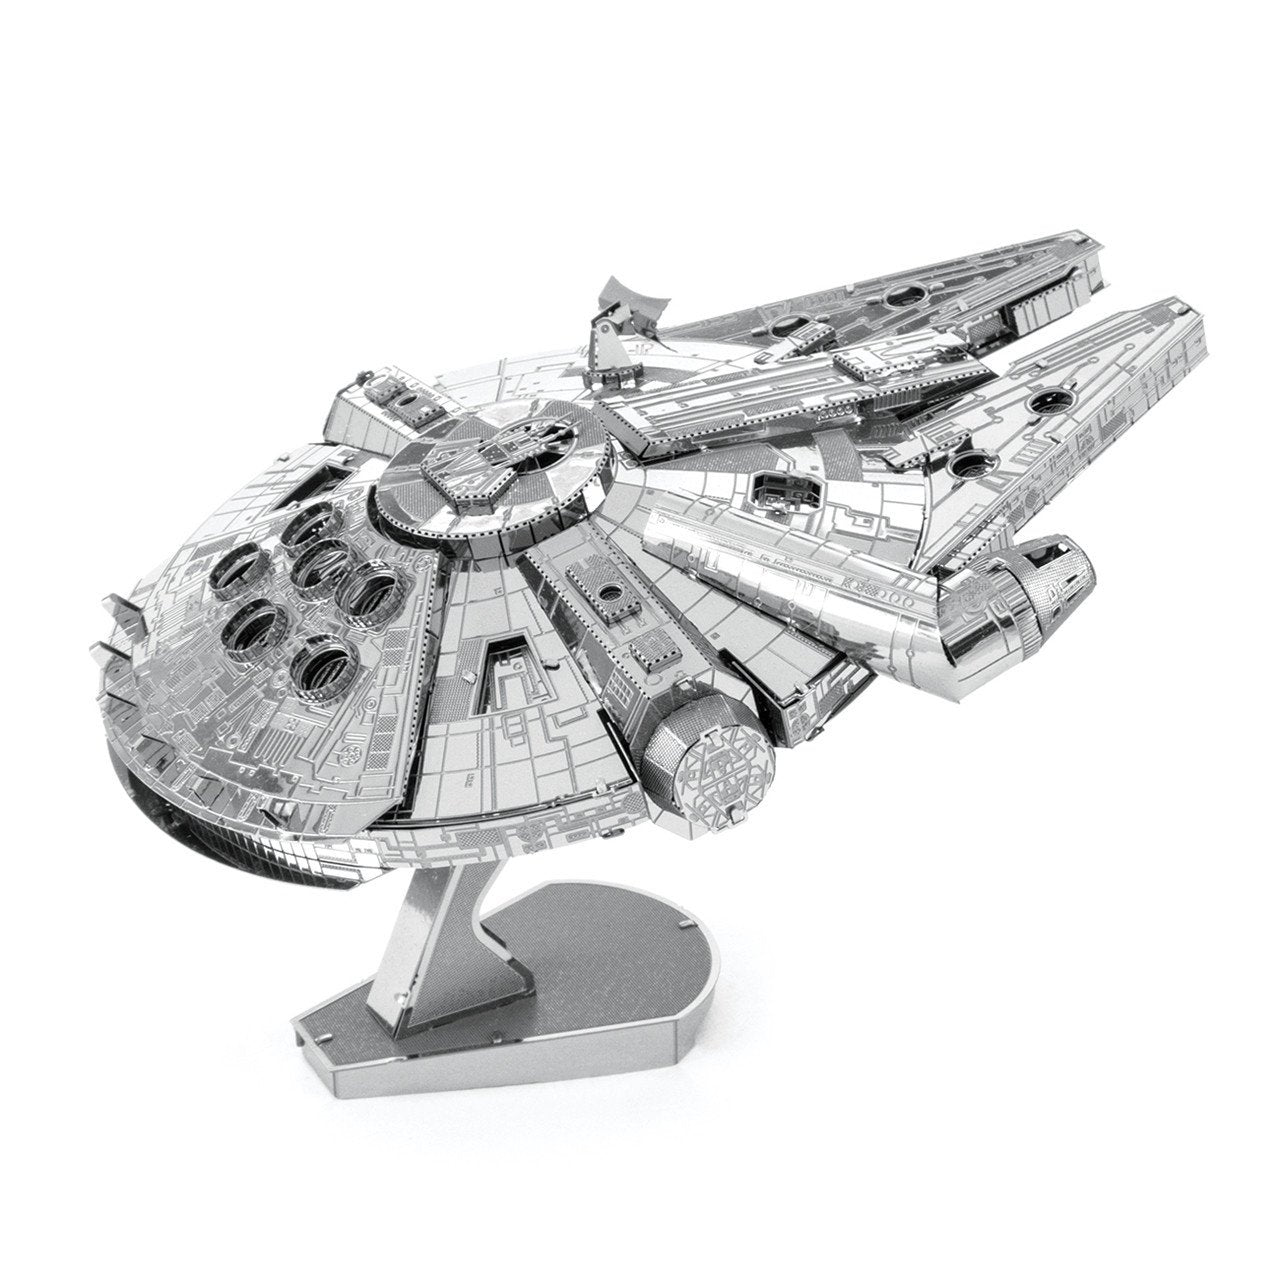 star wars millennium falcon metal earth 3d metal model kit